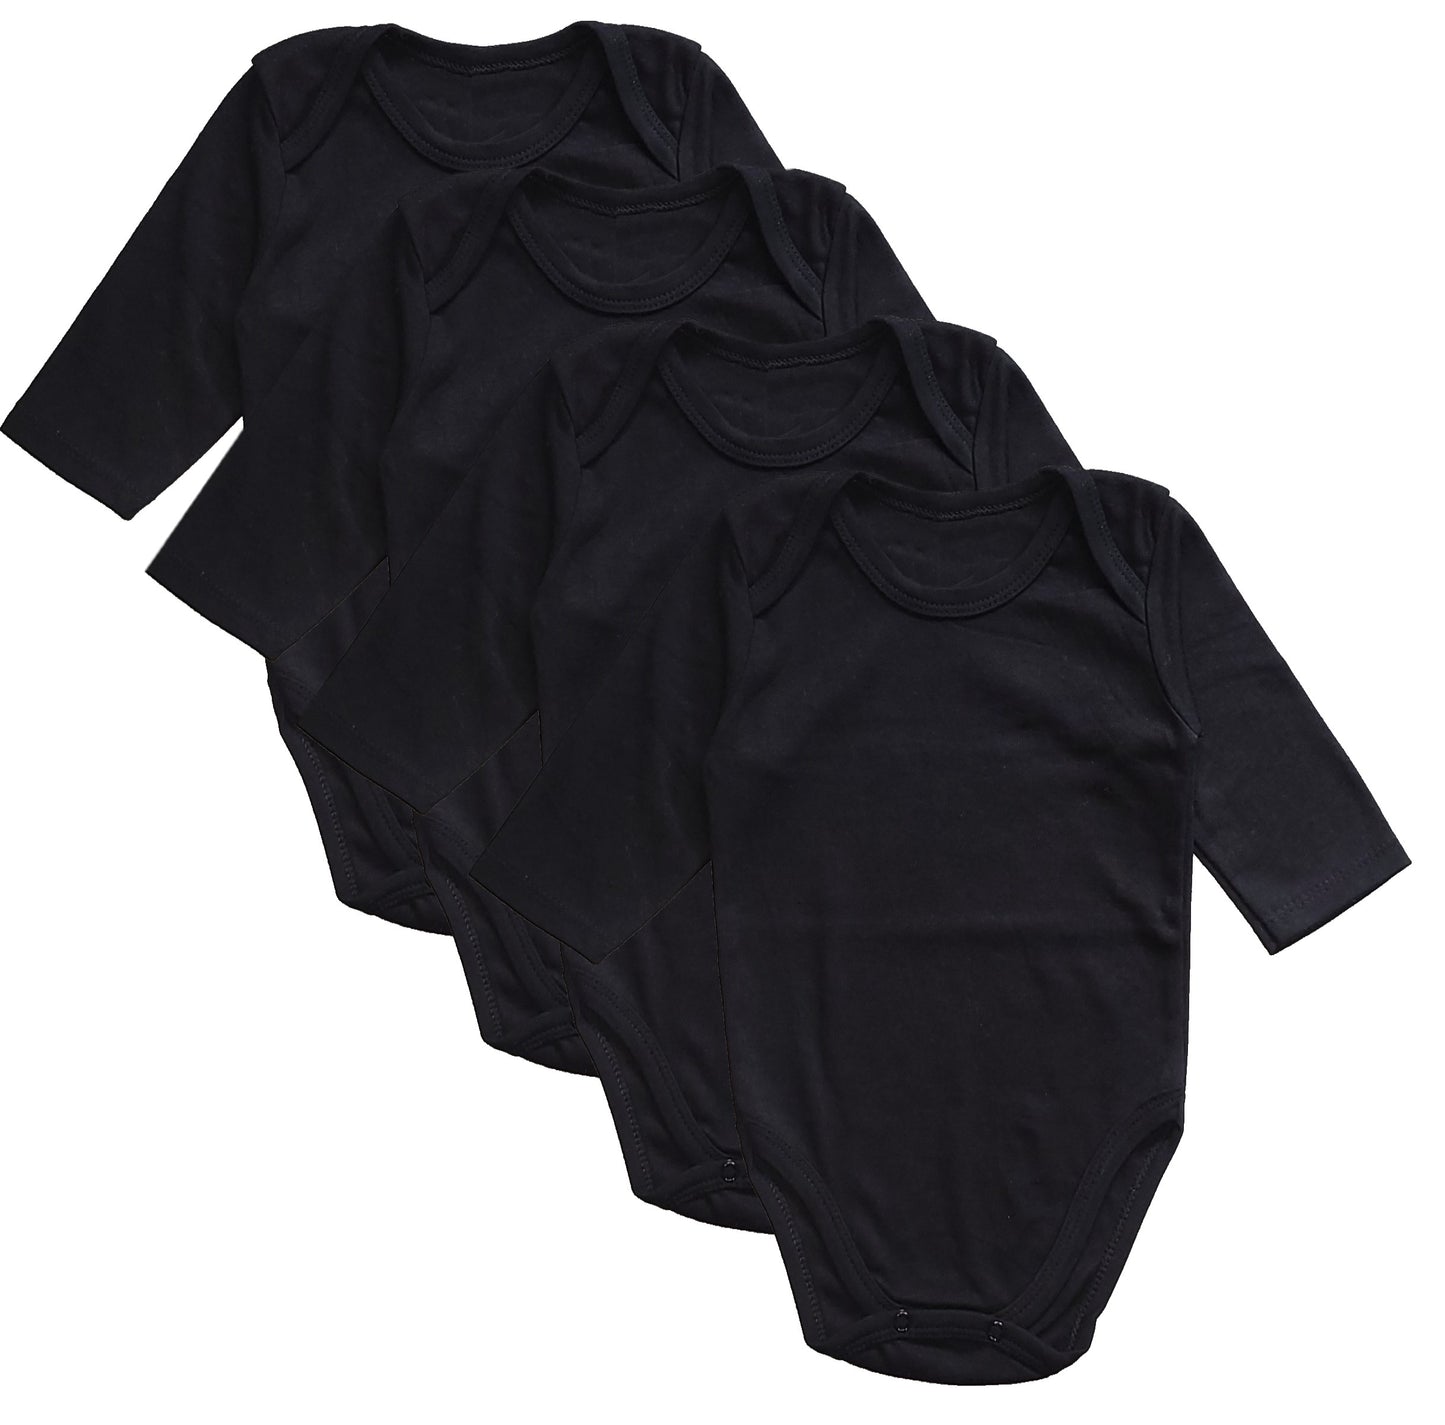 Newborn  Short Sleeve Bodysuits Solid Plain Blank Cotton Size 0-24 Mont KC-4419S